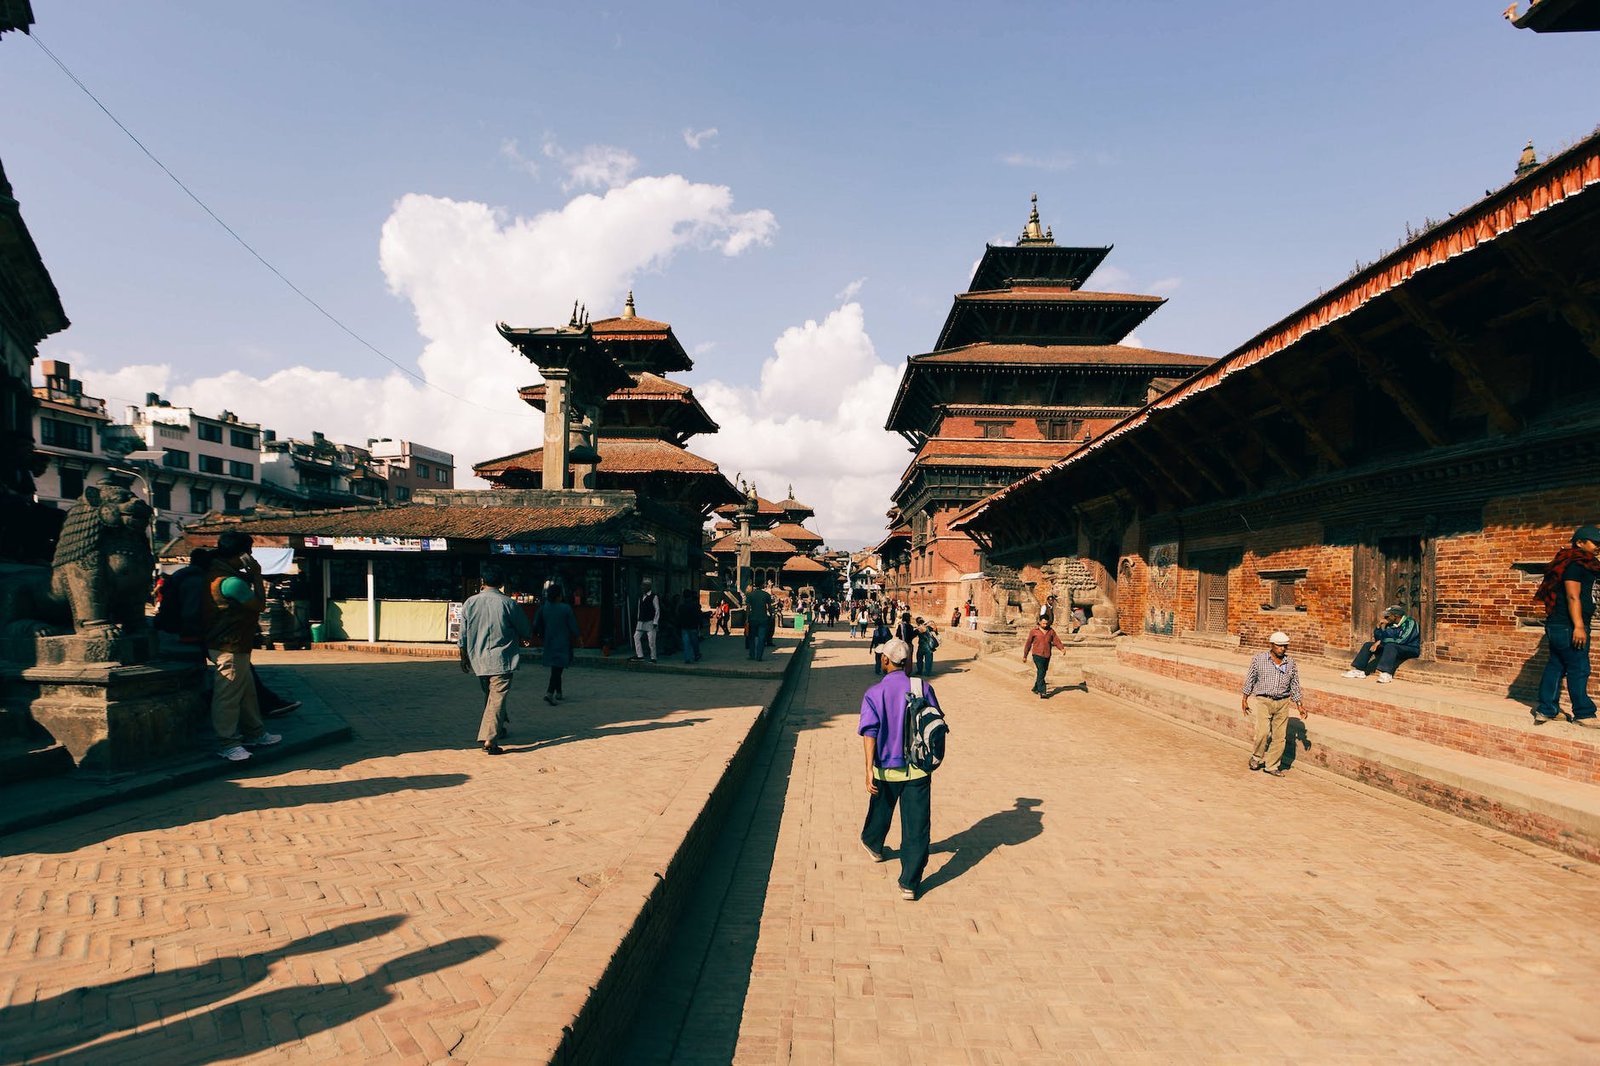 kathmandu durbar square nepal